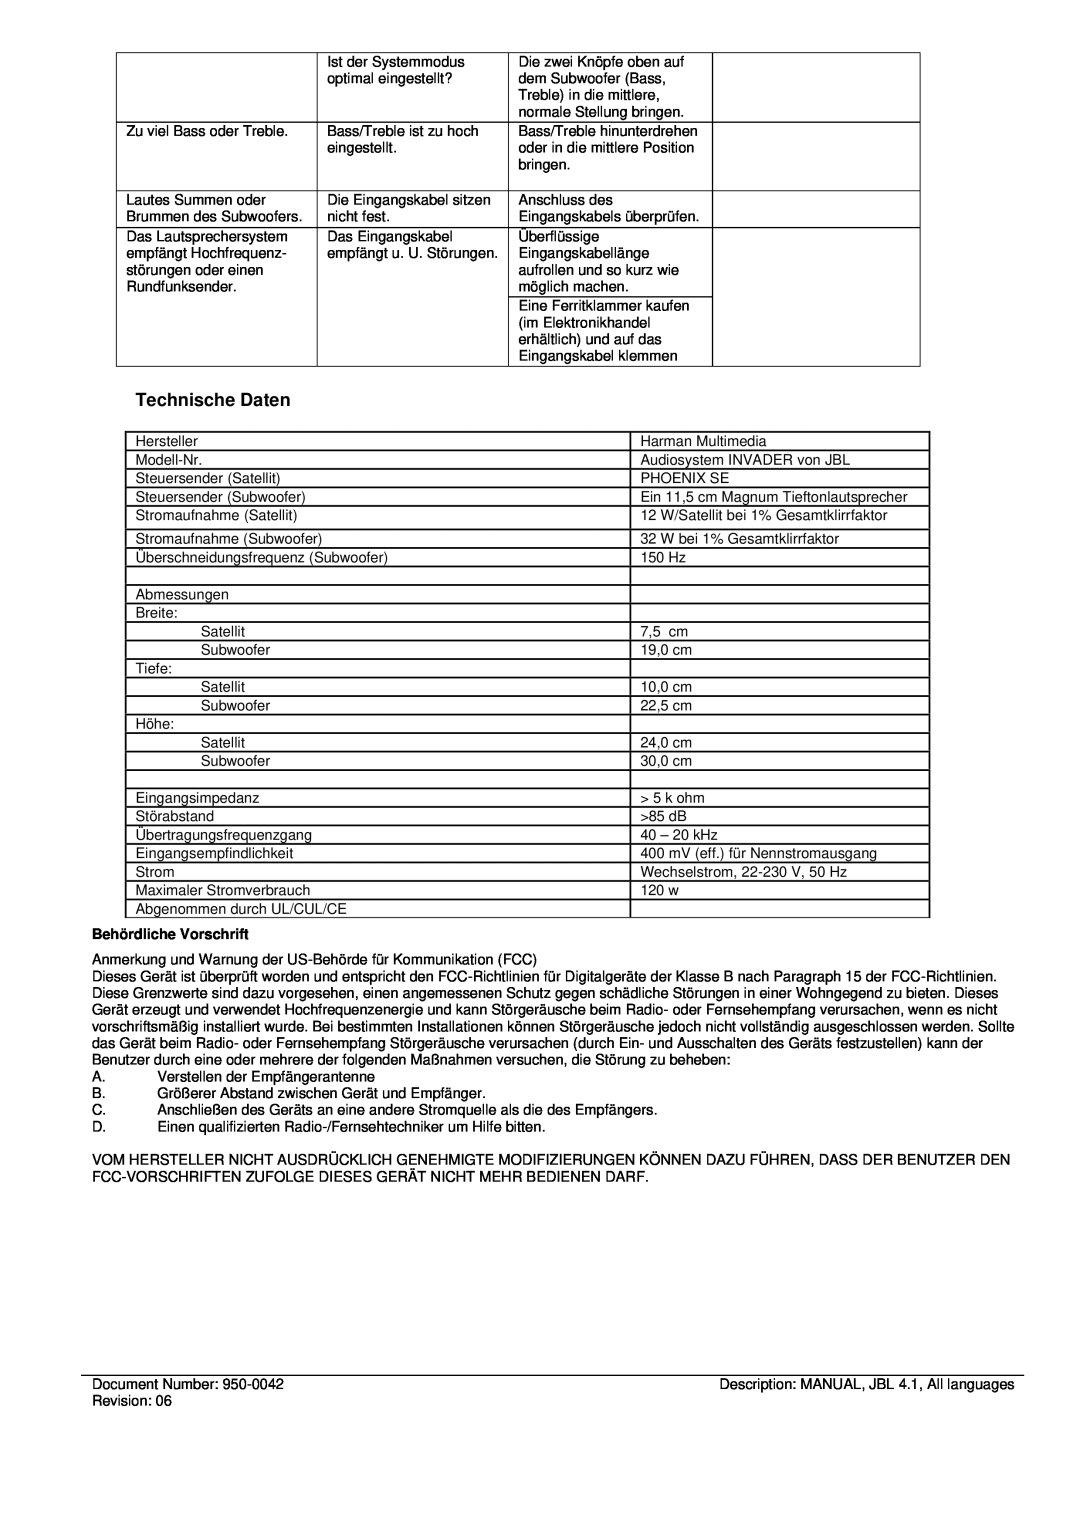 JBL INVADER manual Technische Daten, Behördliche Vorschrift 